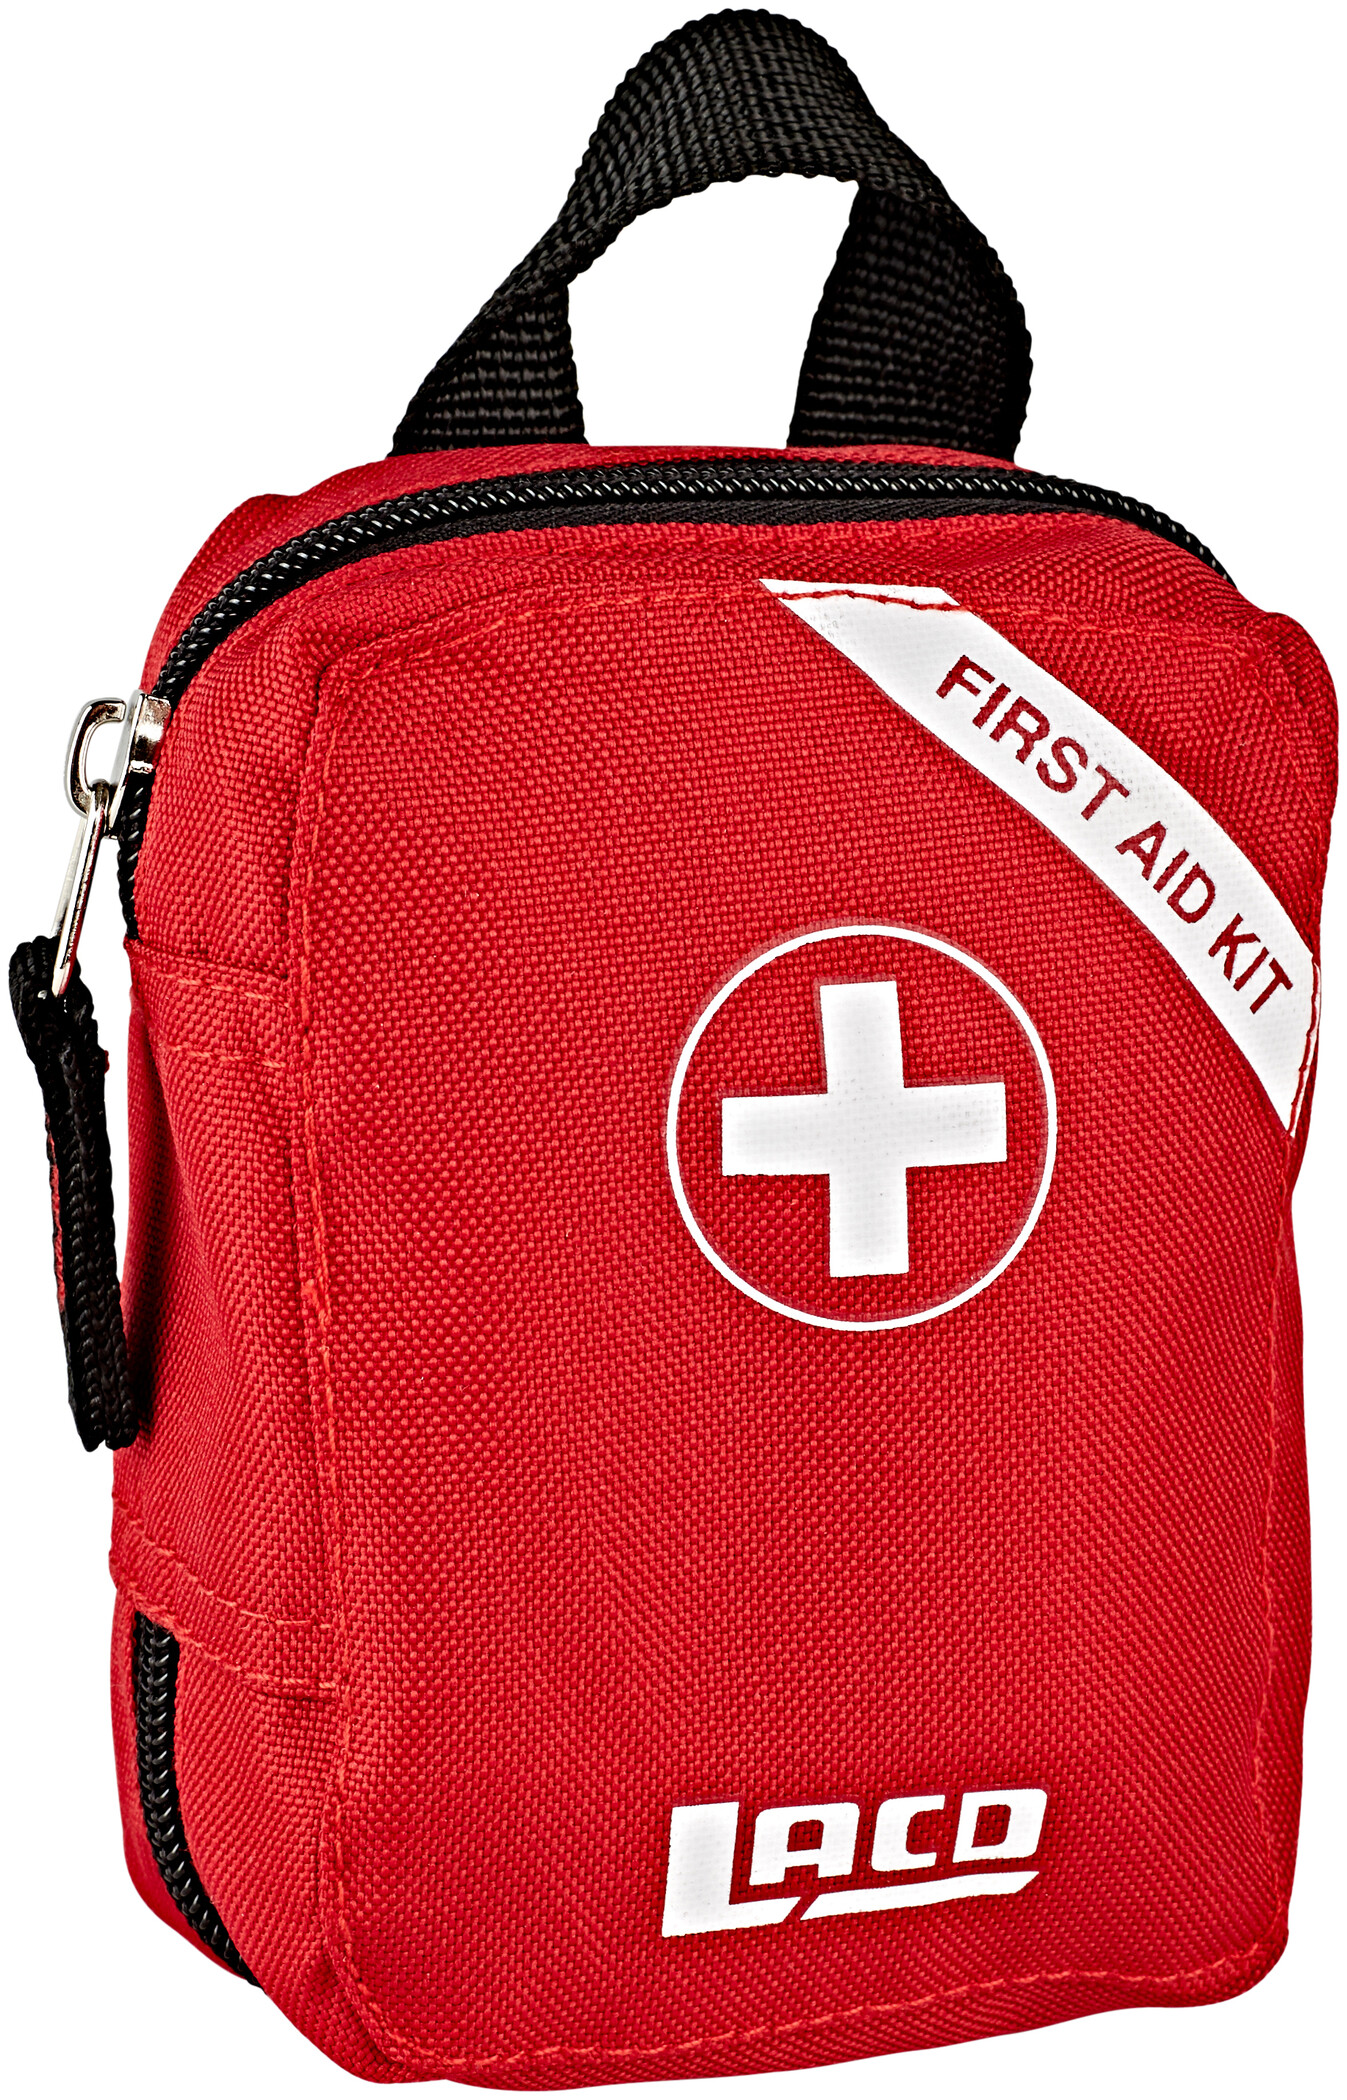 1-teilige Erste-Hilfe-Tasche Outdoor-Zubehör Notfall-Tasche Erste-Hilfe-Set für 